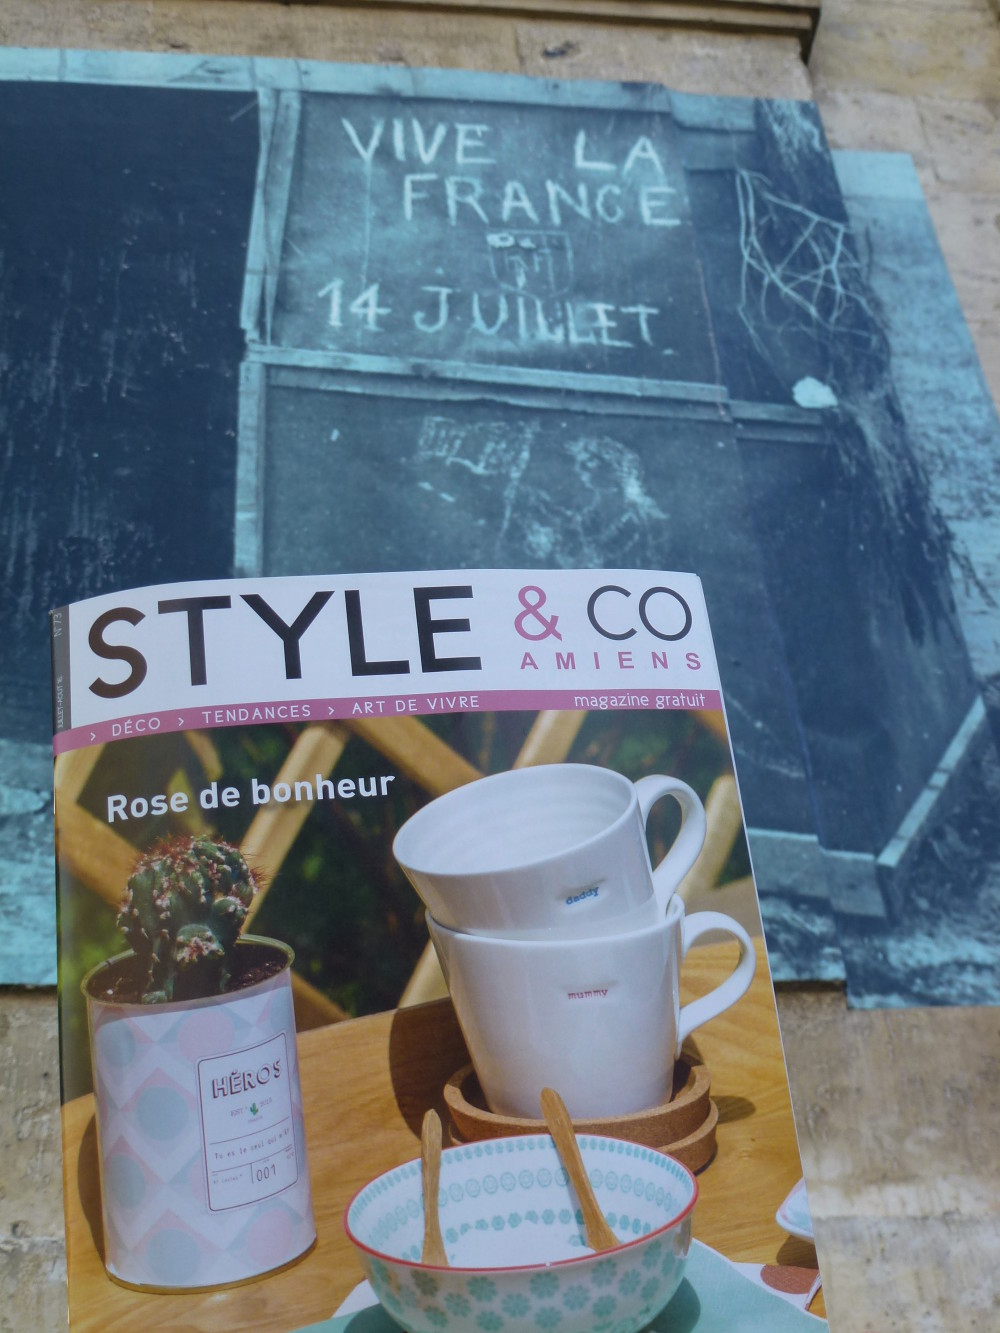 Style & Co, un nouveau héros pour la France! (Hôtel de ville, Amiens)